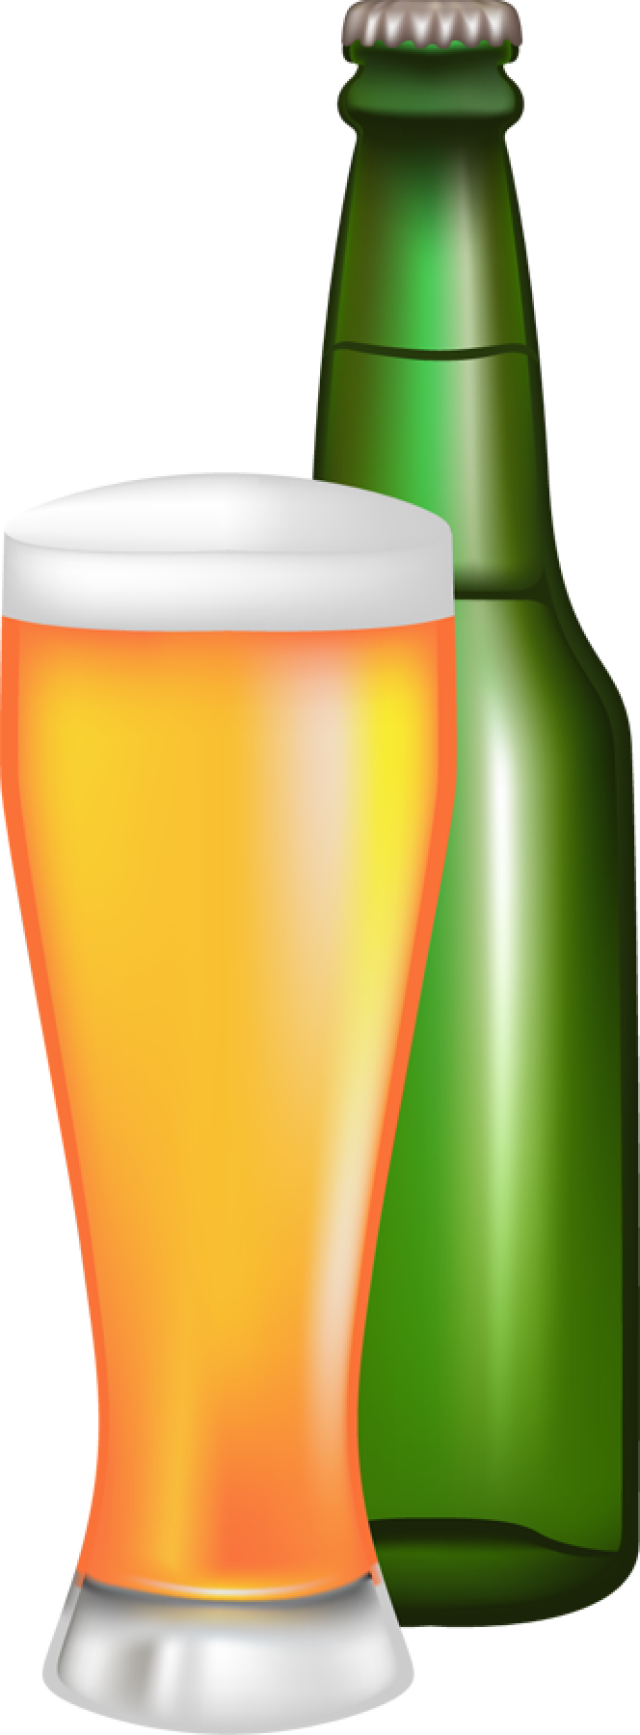 Beer Bottle Clipart Wk Bee10 - Beer Bottle Clipart Free (640x1735)